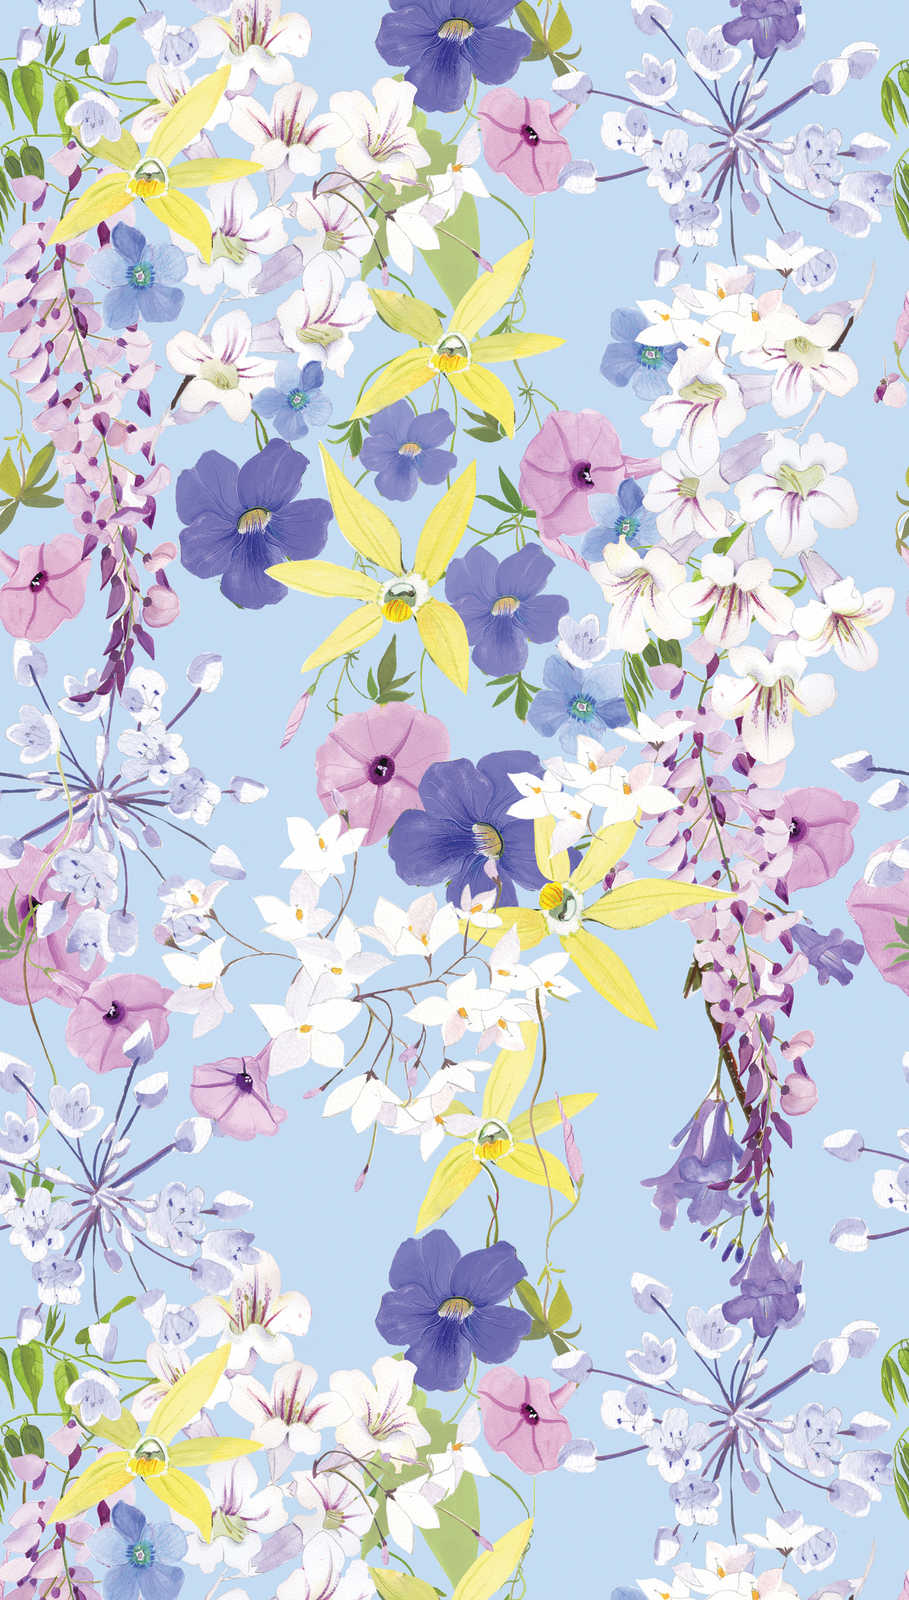             Papel pintado con motivos florales en colores frescos - multicolor, lila, amarillo
        